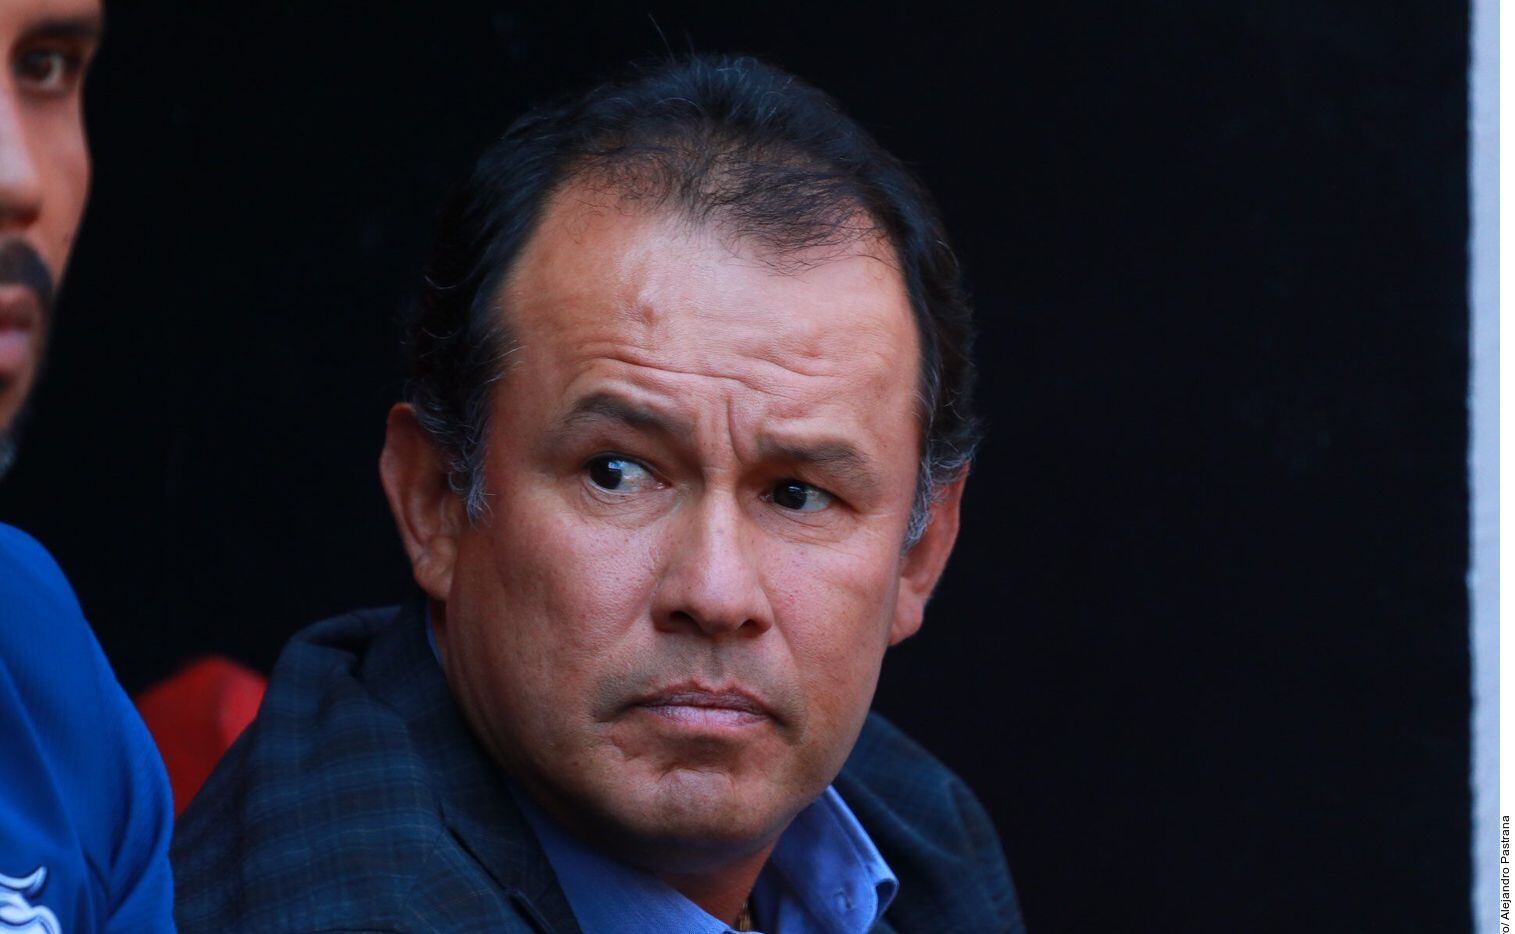 El entrenador peruano Juan Reynoso sacó campeón a Cruz Azul, luego de 23 años de sequía de títulos en el futbol mexicano.